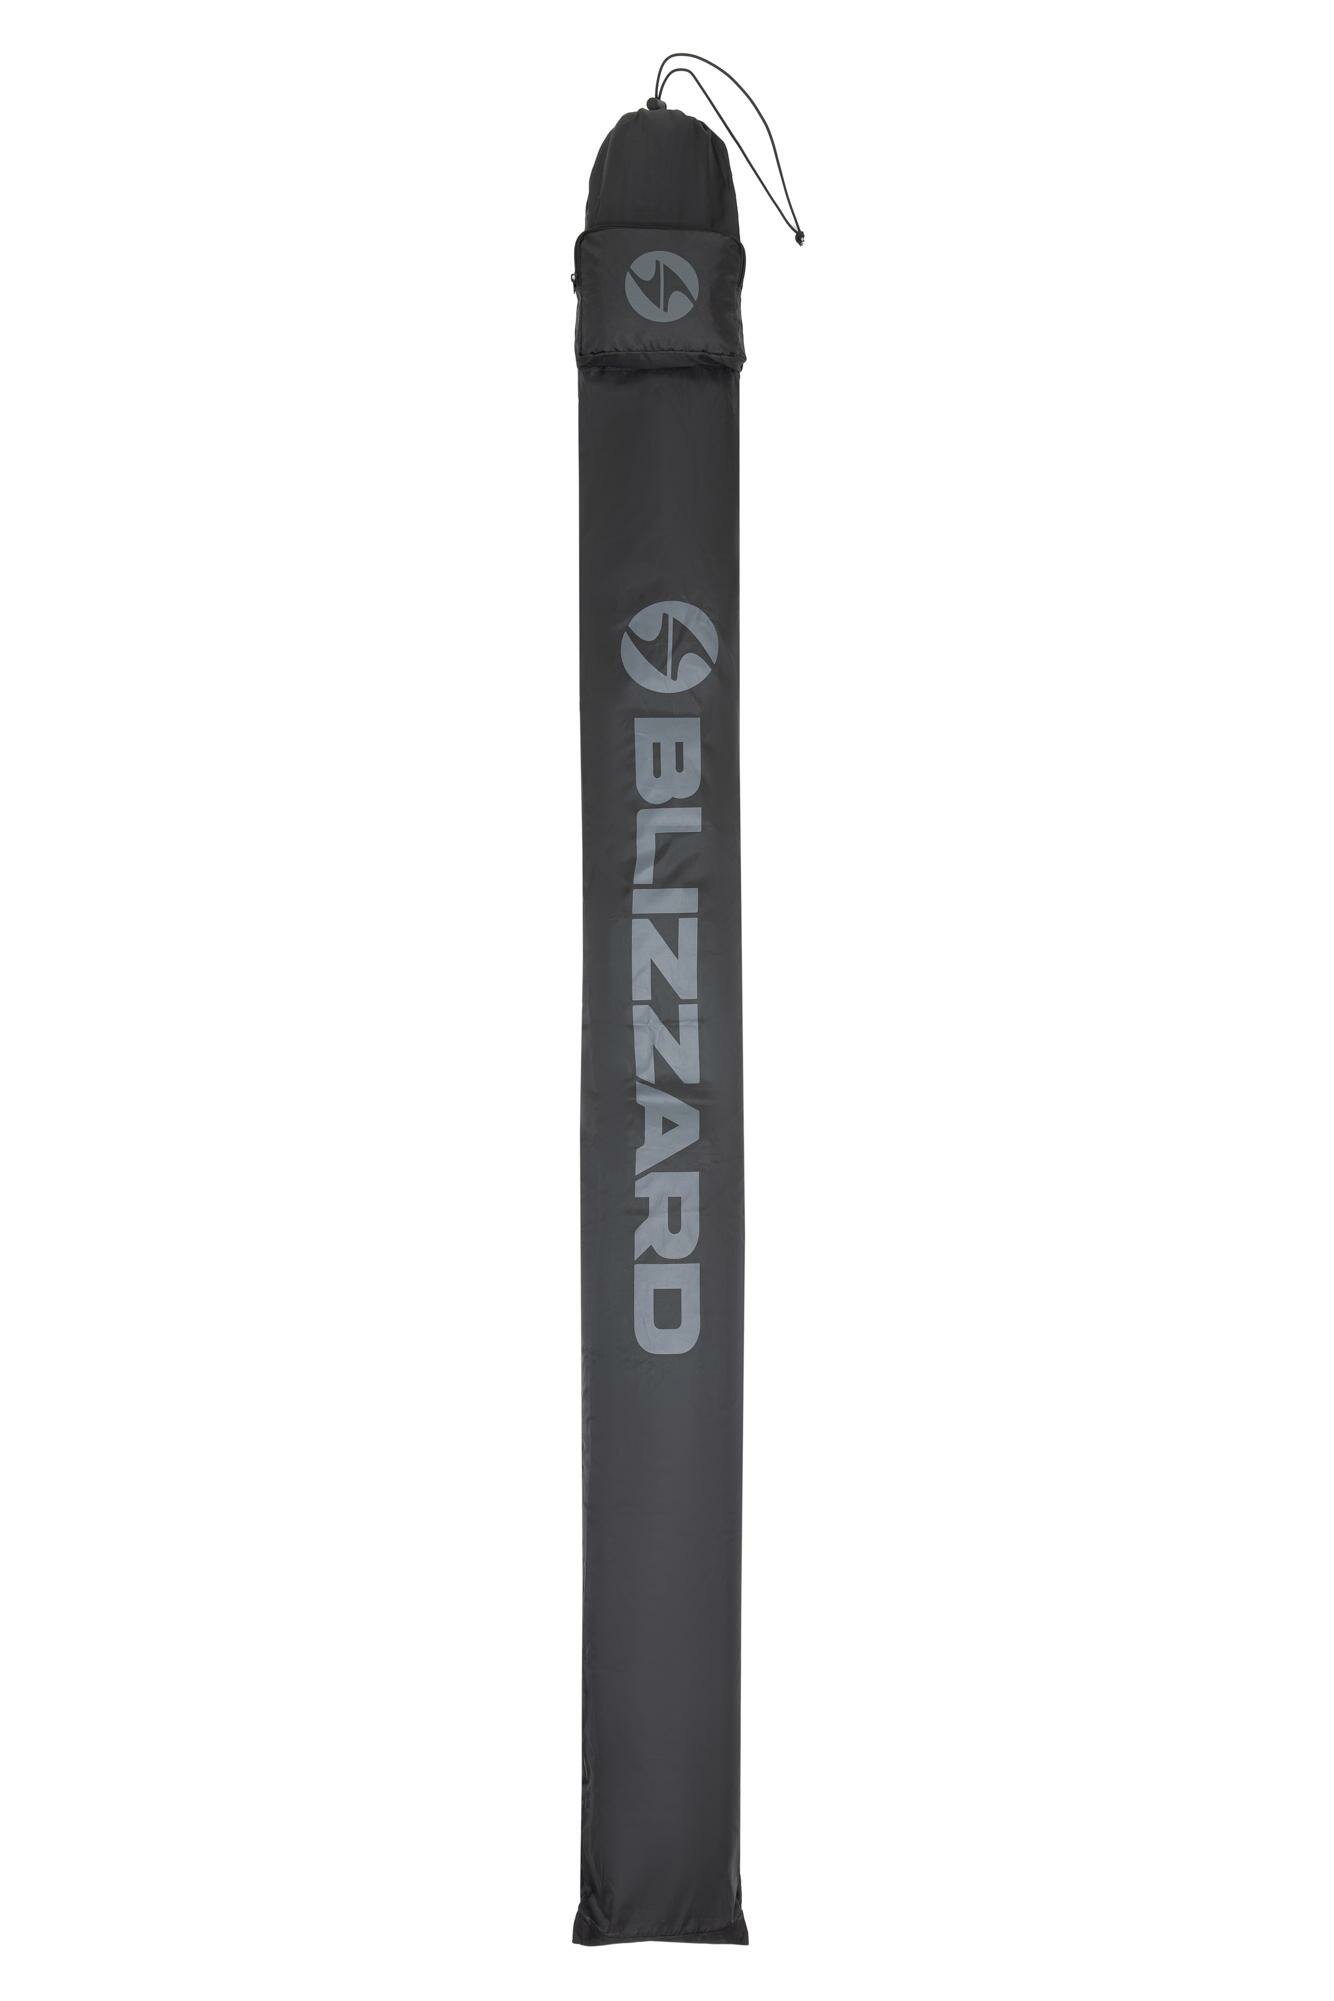 Чехол для беговых лыж BLIZZARD Ski bag for crosscountry 210 cm Black/Silver (см:210)